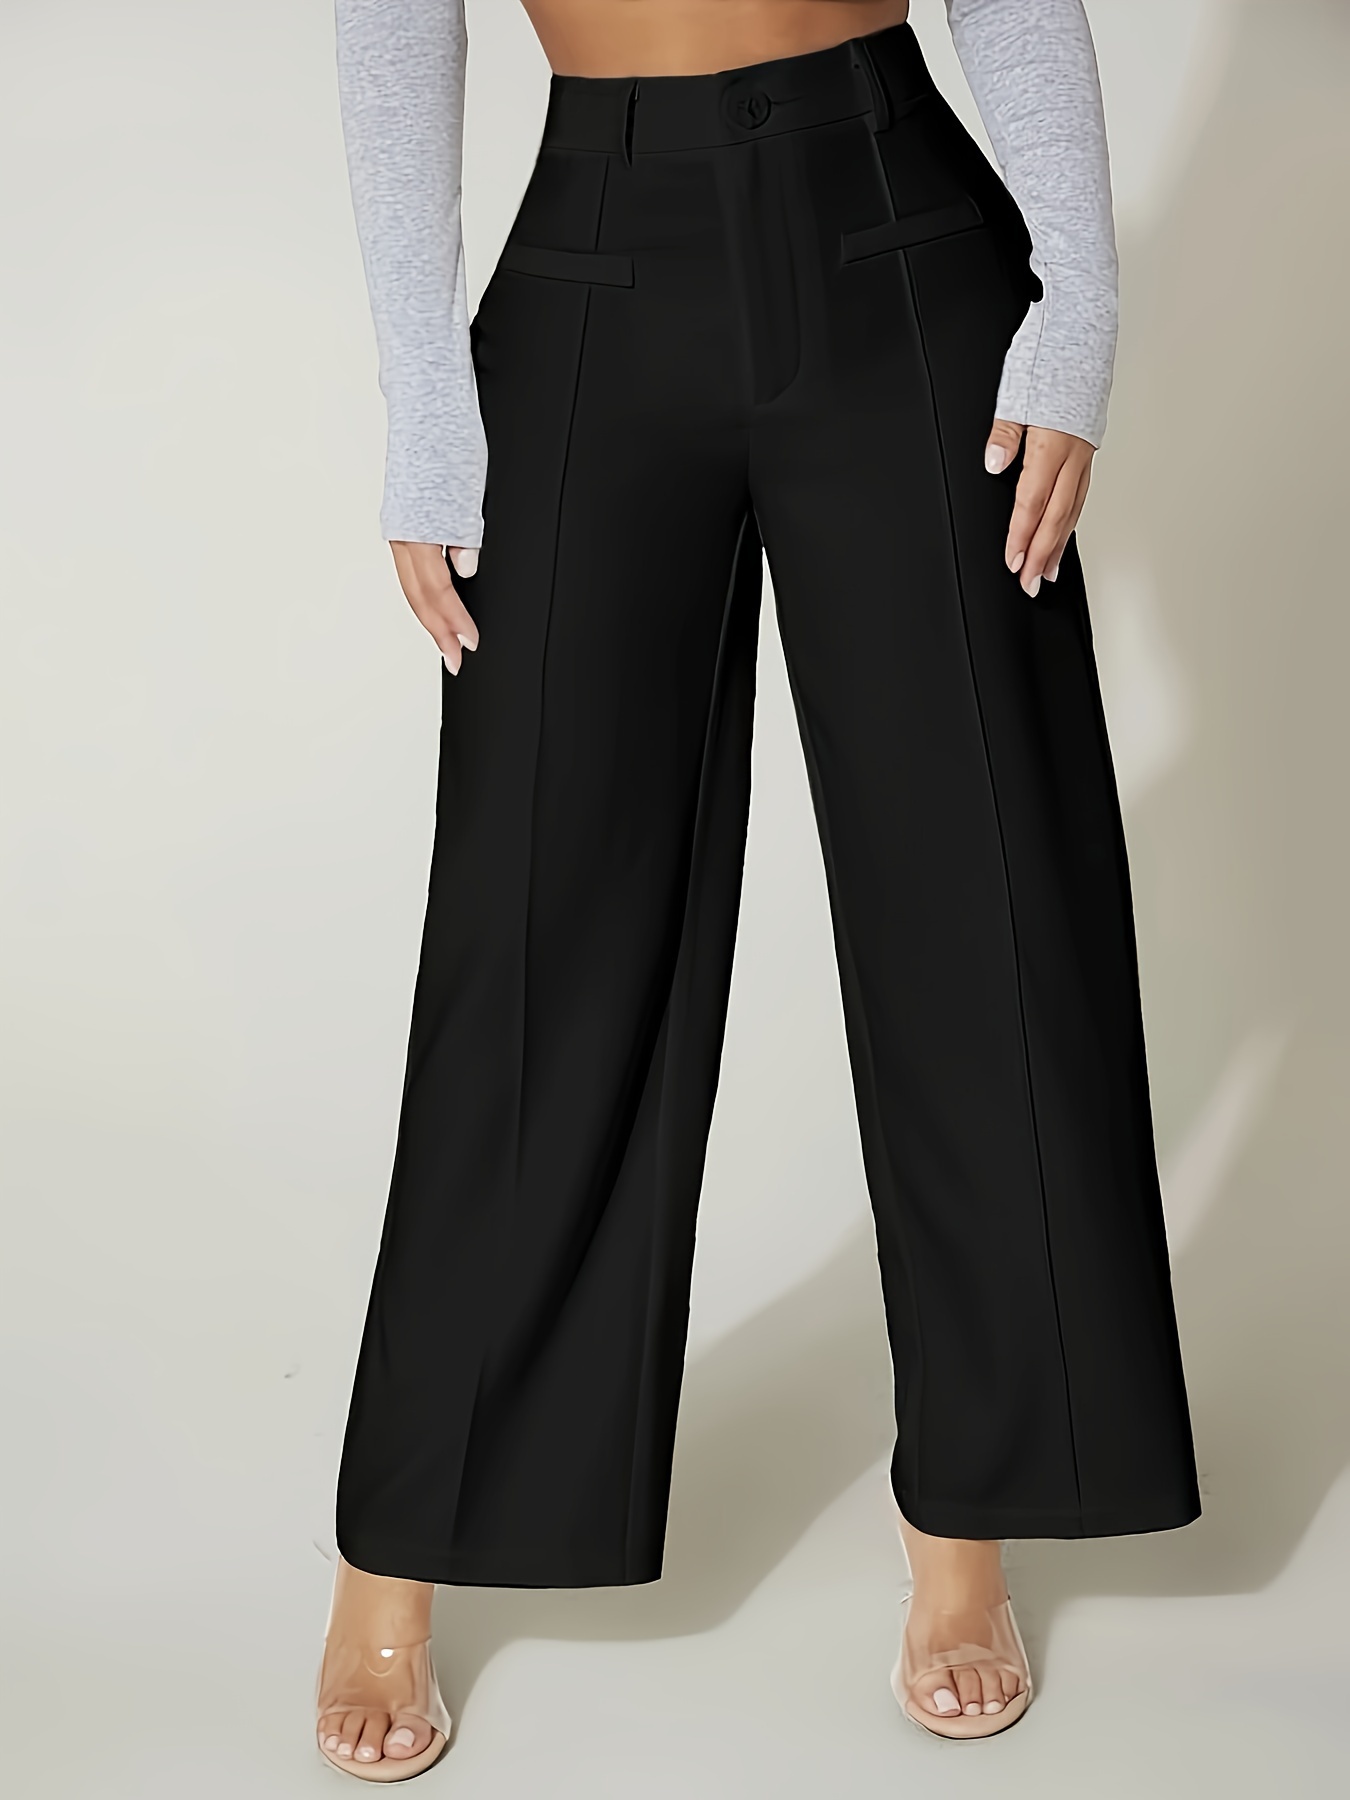 Pantalones De Cintura Alta Sólidos, Elegantes Pantalones De Pierna Ancha  Para La Oficina Y El Trabajo, Ropa De Mujer